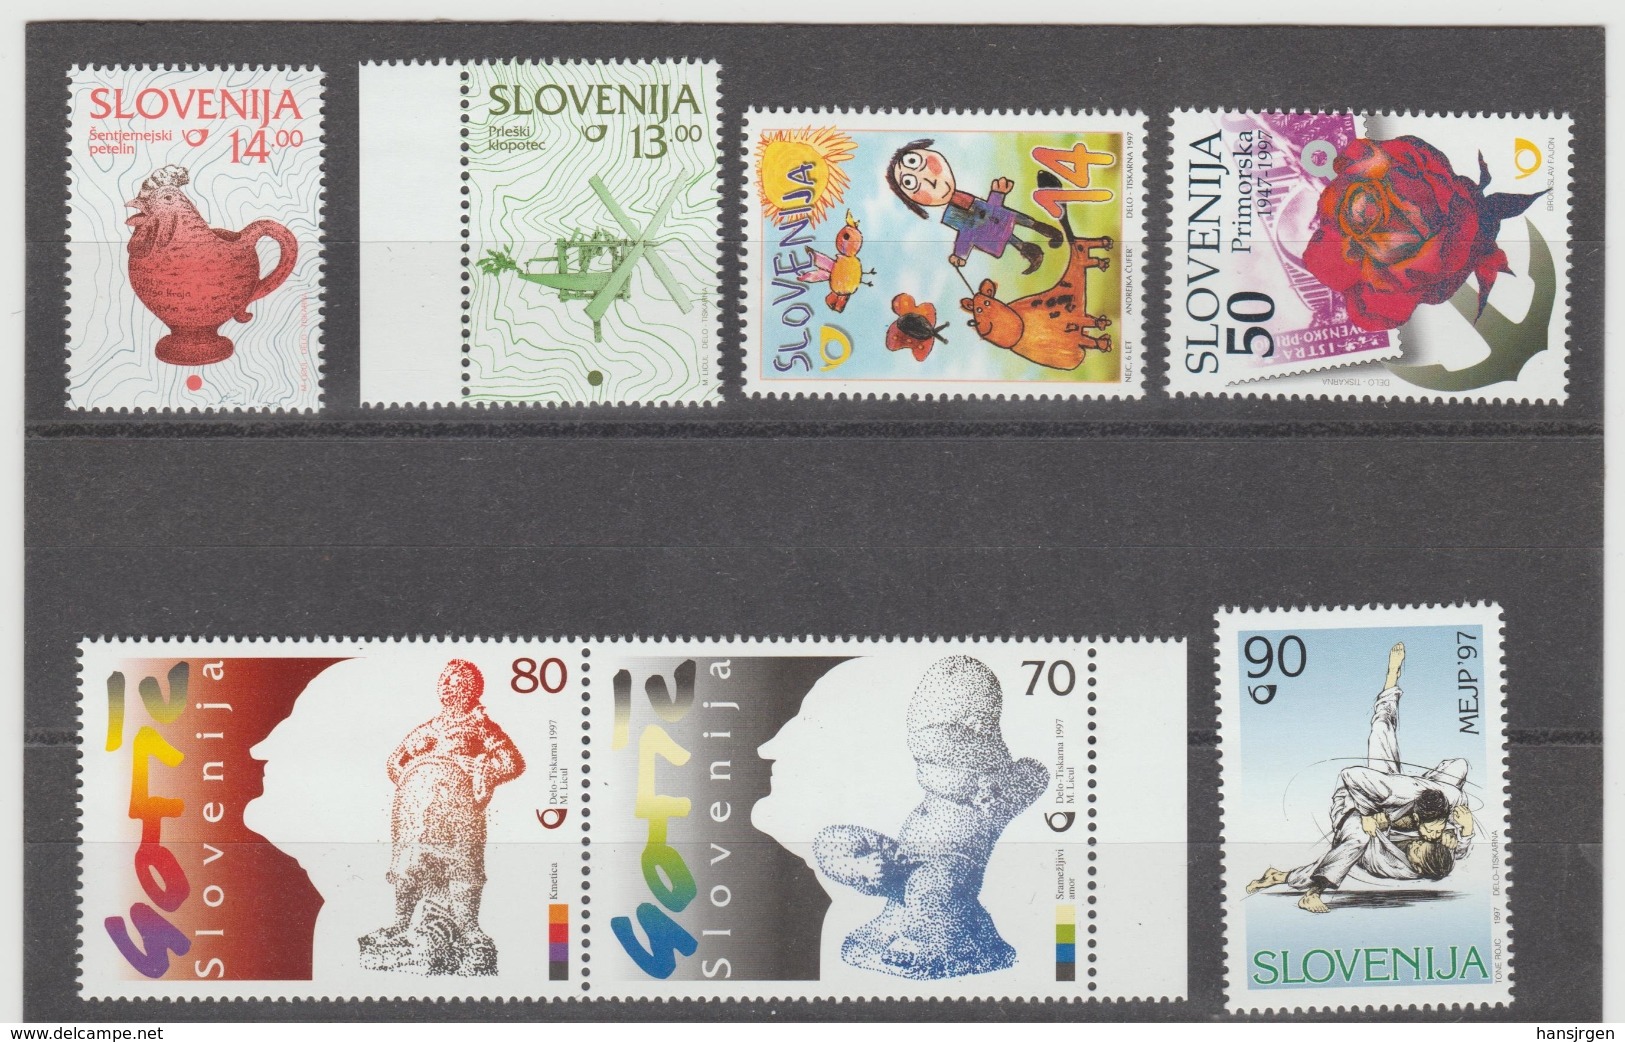 NEU745  SLOWENIEN / SLOVENIJA  1997 MICHL  204/10  Postfrisch SIHE ABBILDUNG - Slowenien